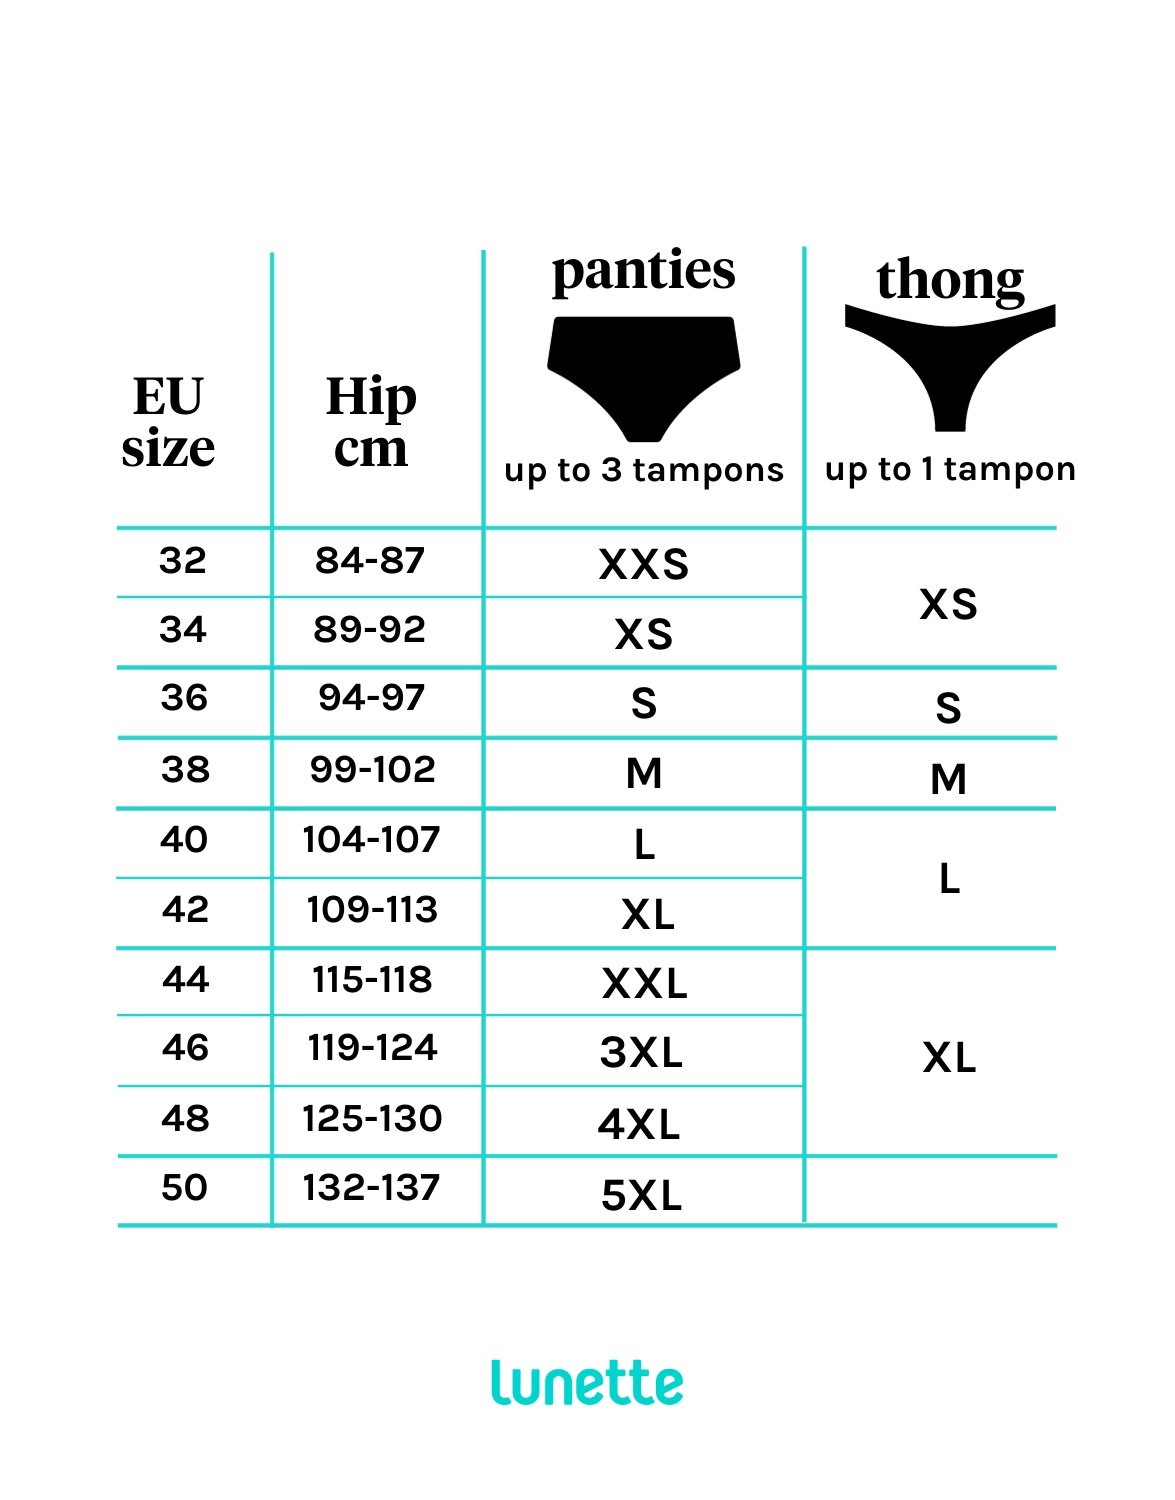 Lunette period panty. Period Underwear - Black - Ecco Verde Online